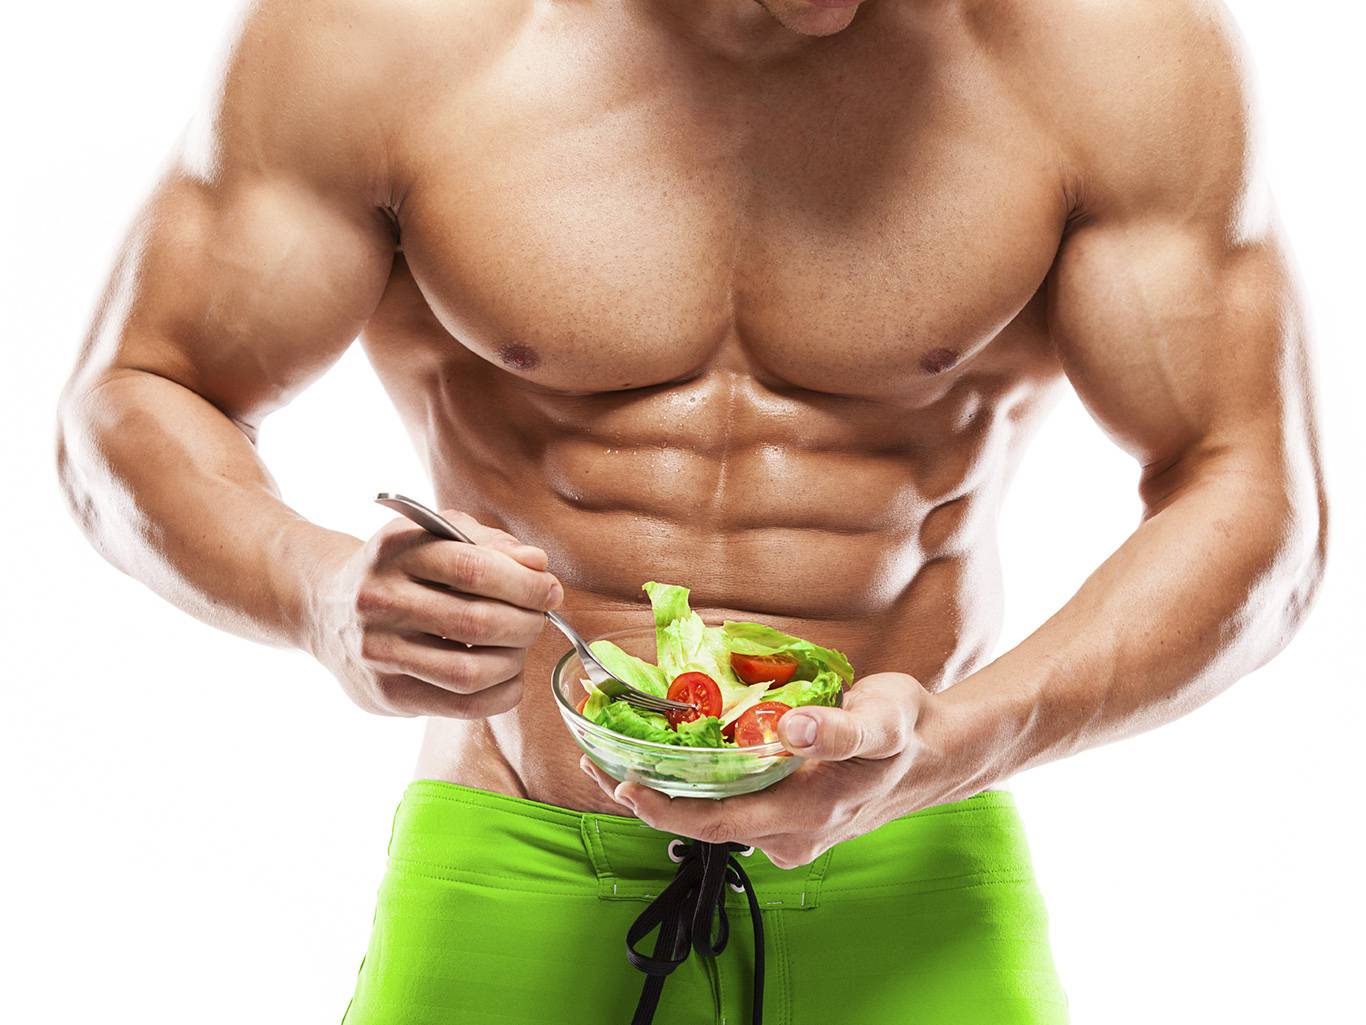 Питание для набора мышечной массы для мужчин - эффективная белковая диета